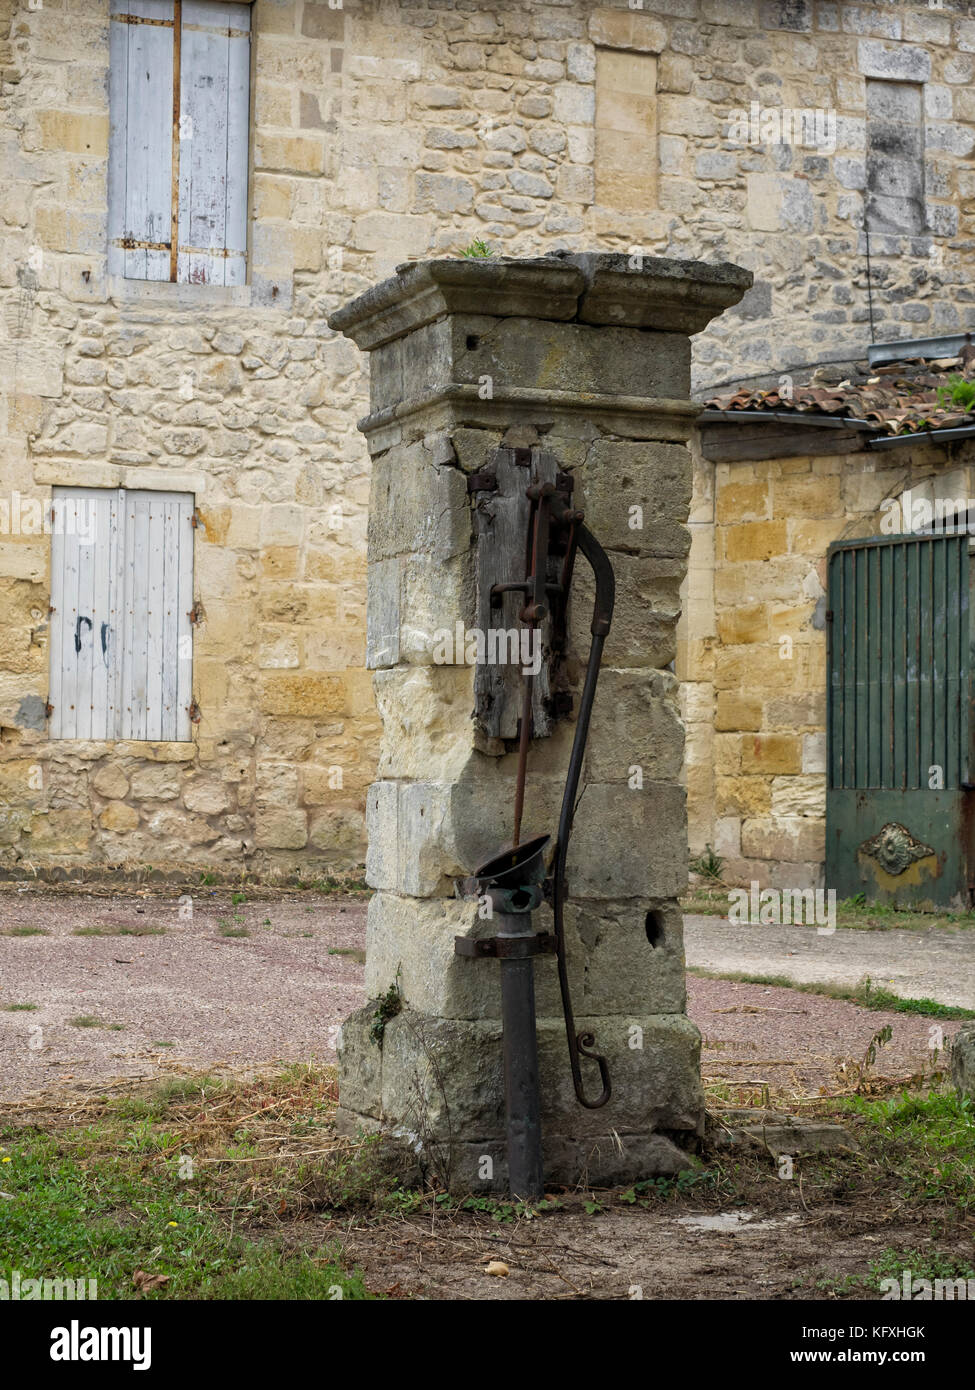 SAINT-EMILION, FRANCIA - 07 SETTEMBRE 2017: Vecchia pompa d'acqua pubblica a mano d'uso nel villaggio Foto Stock